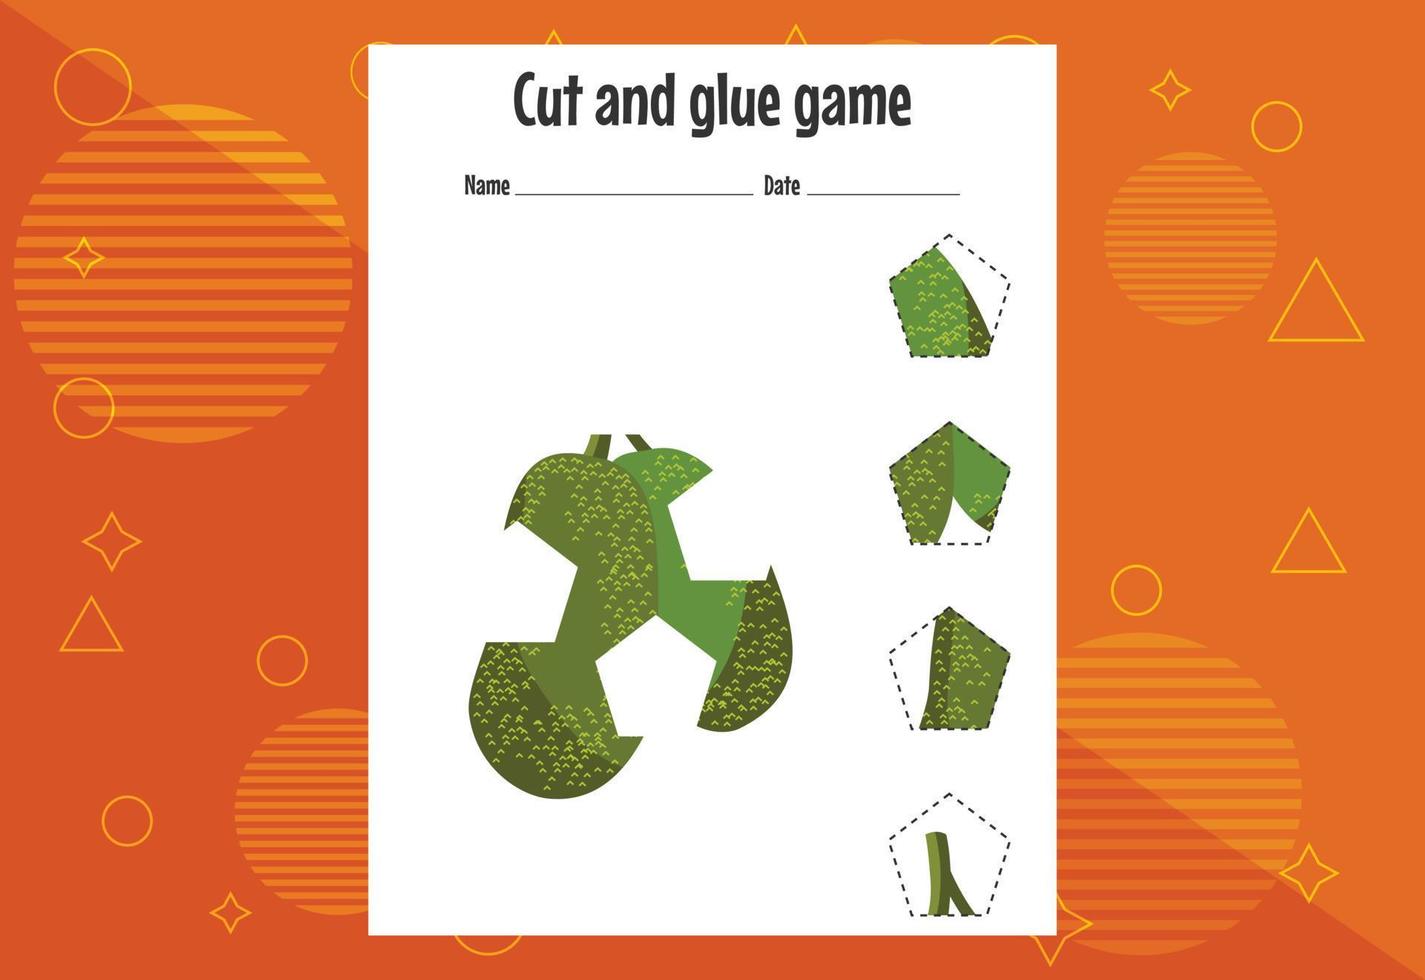 knip- en lijmspel voor kinderen met fruit. knipoefening voor kleuters. onderwijs pagina vector